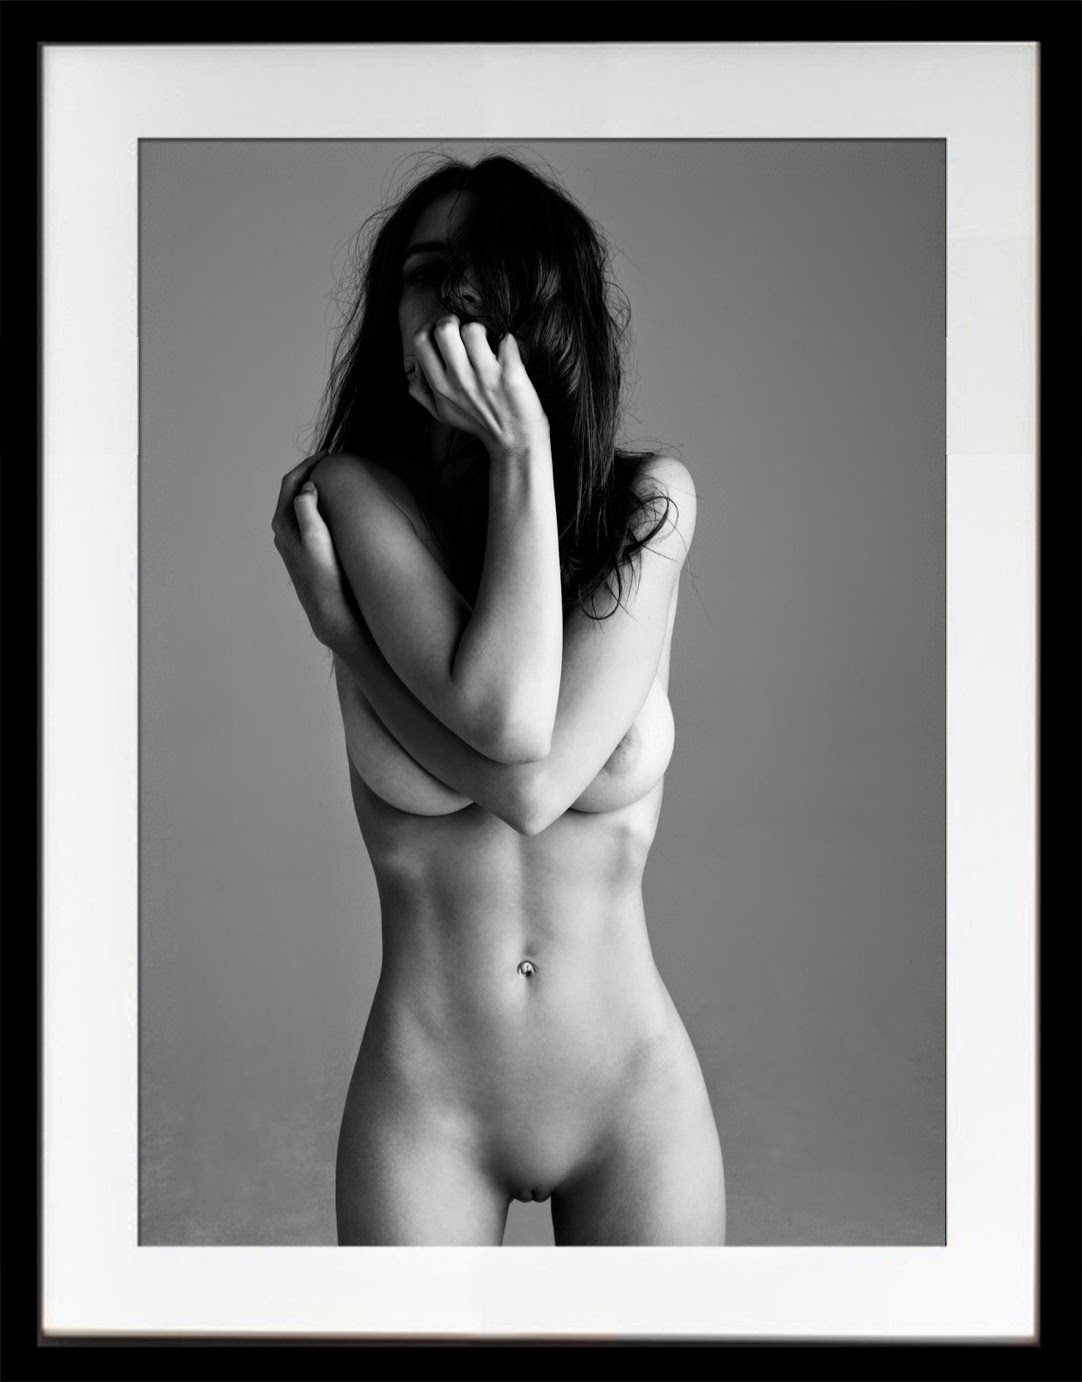 Emily Ratajkowski - Treats Magazine Naked Photoshoot Outtakes.